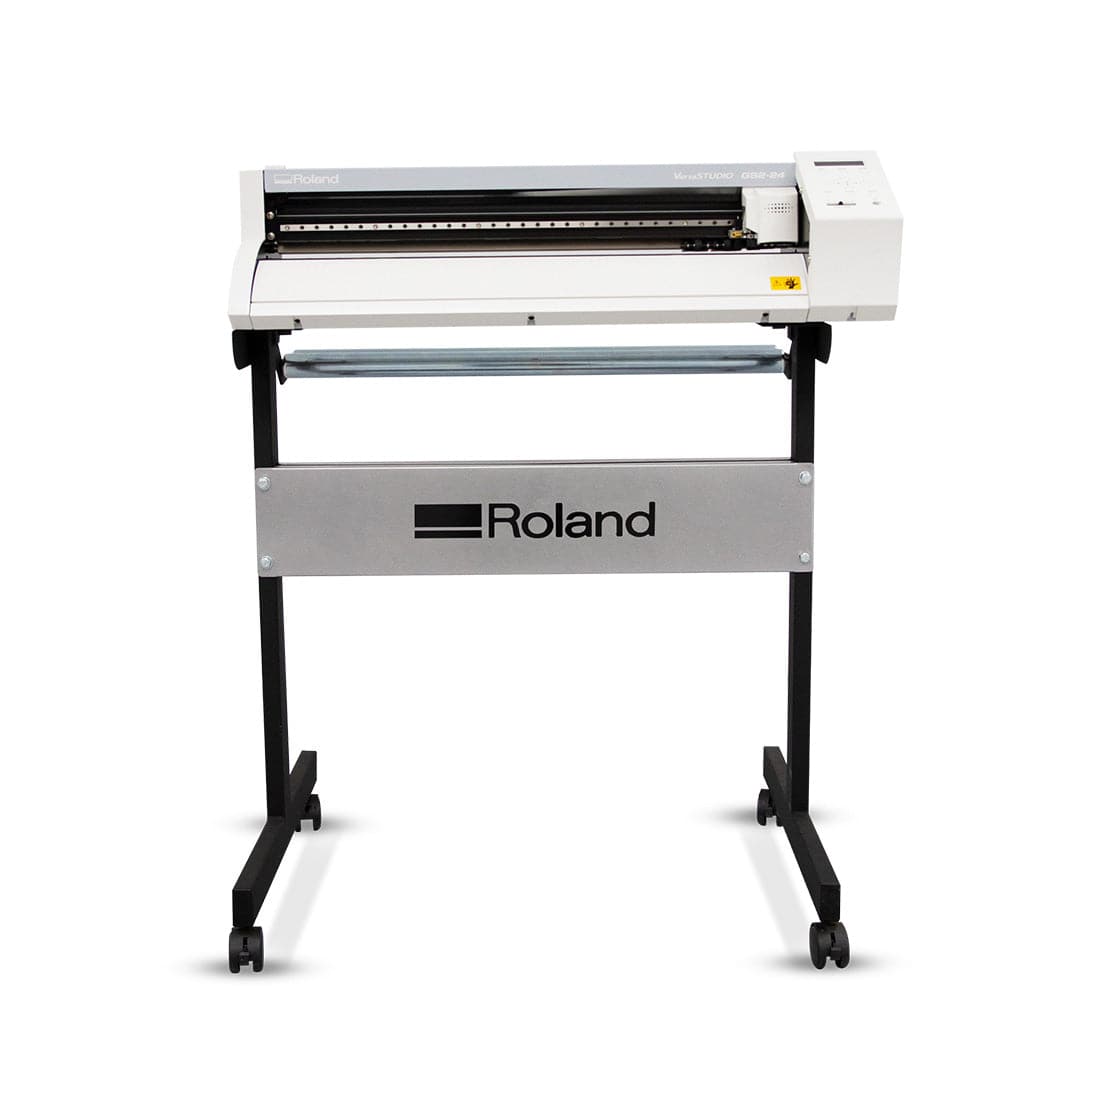 Roland GS2-24 Cutter/Plotter - Joto Imaging Supplies US